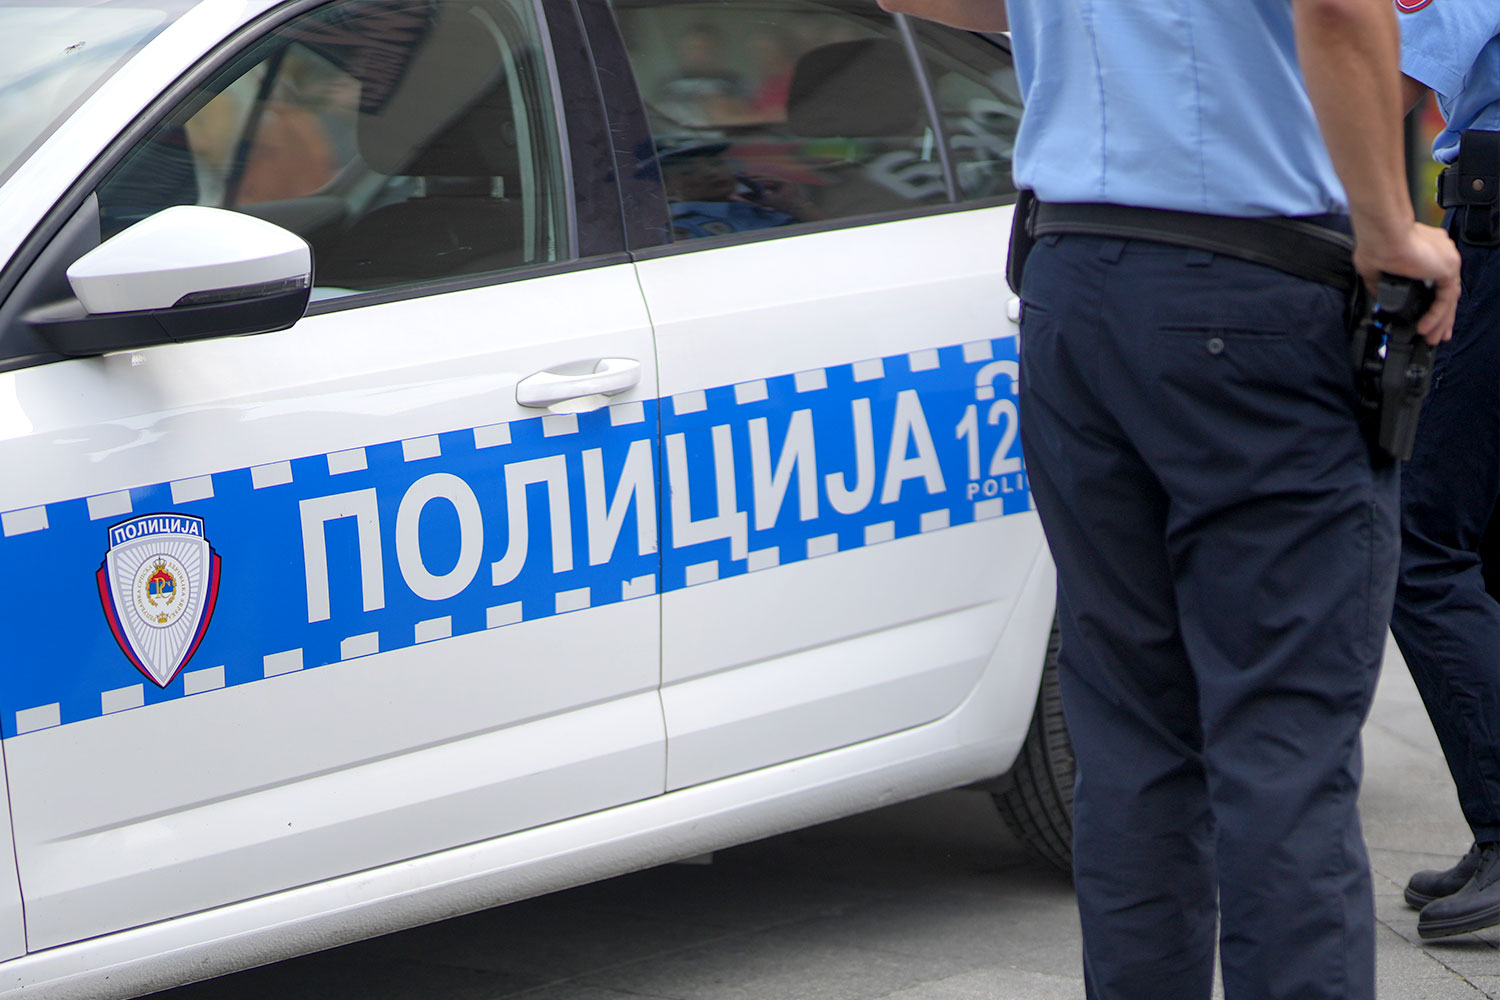 Banjalučka policija: Nema krivičnih djela u prijavama građana o vozilima u blizini škole